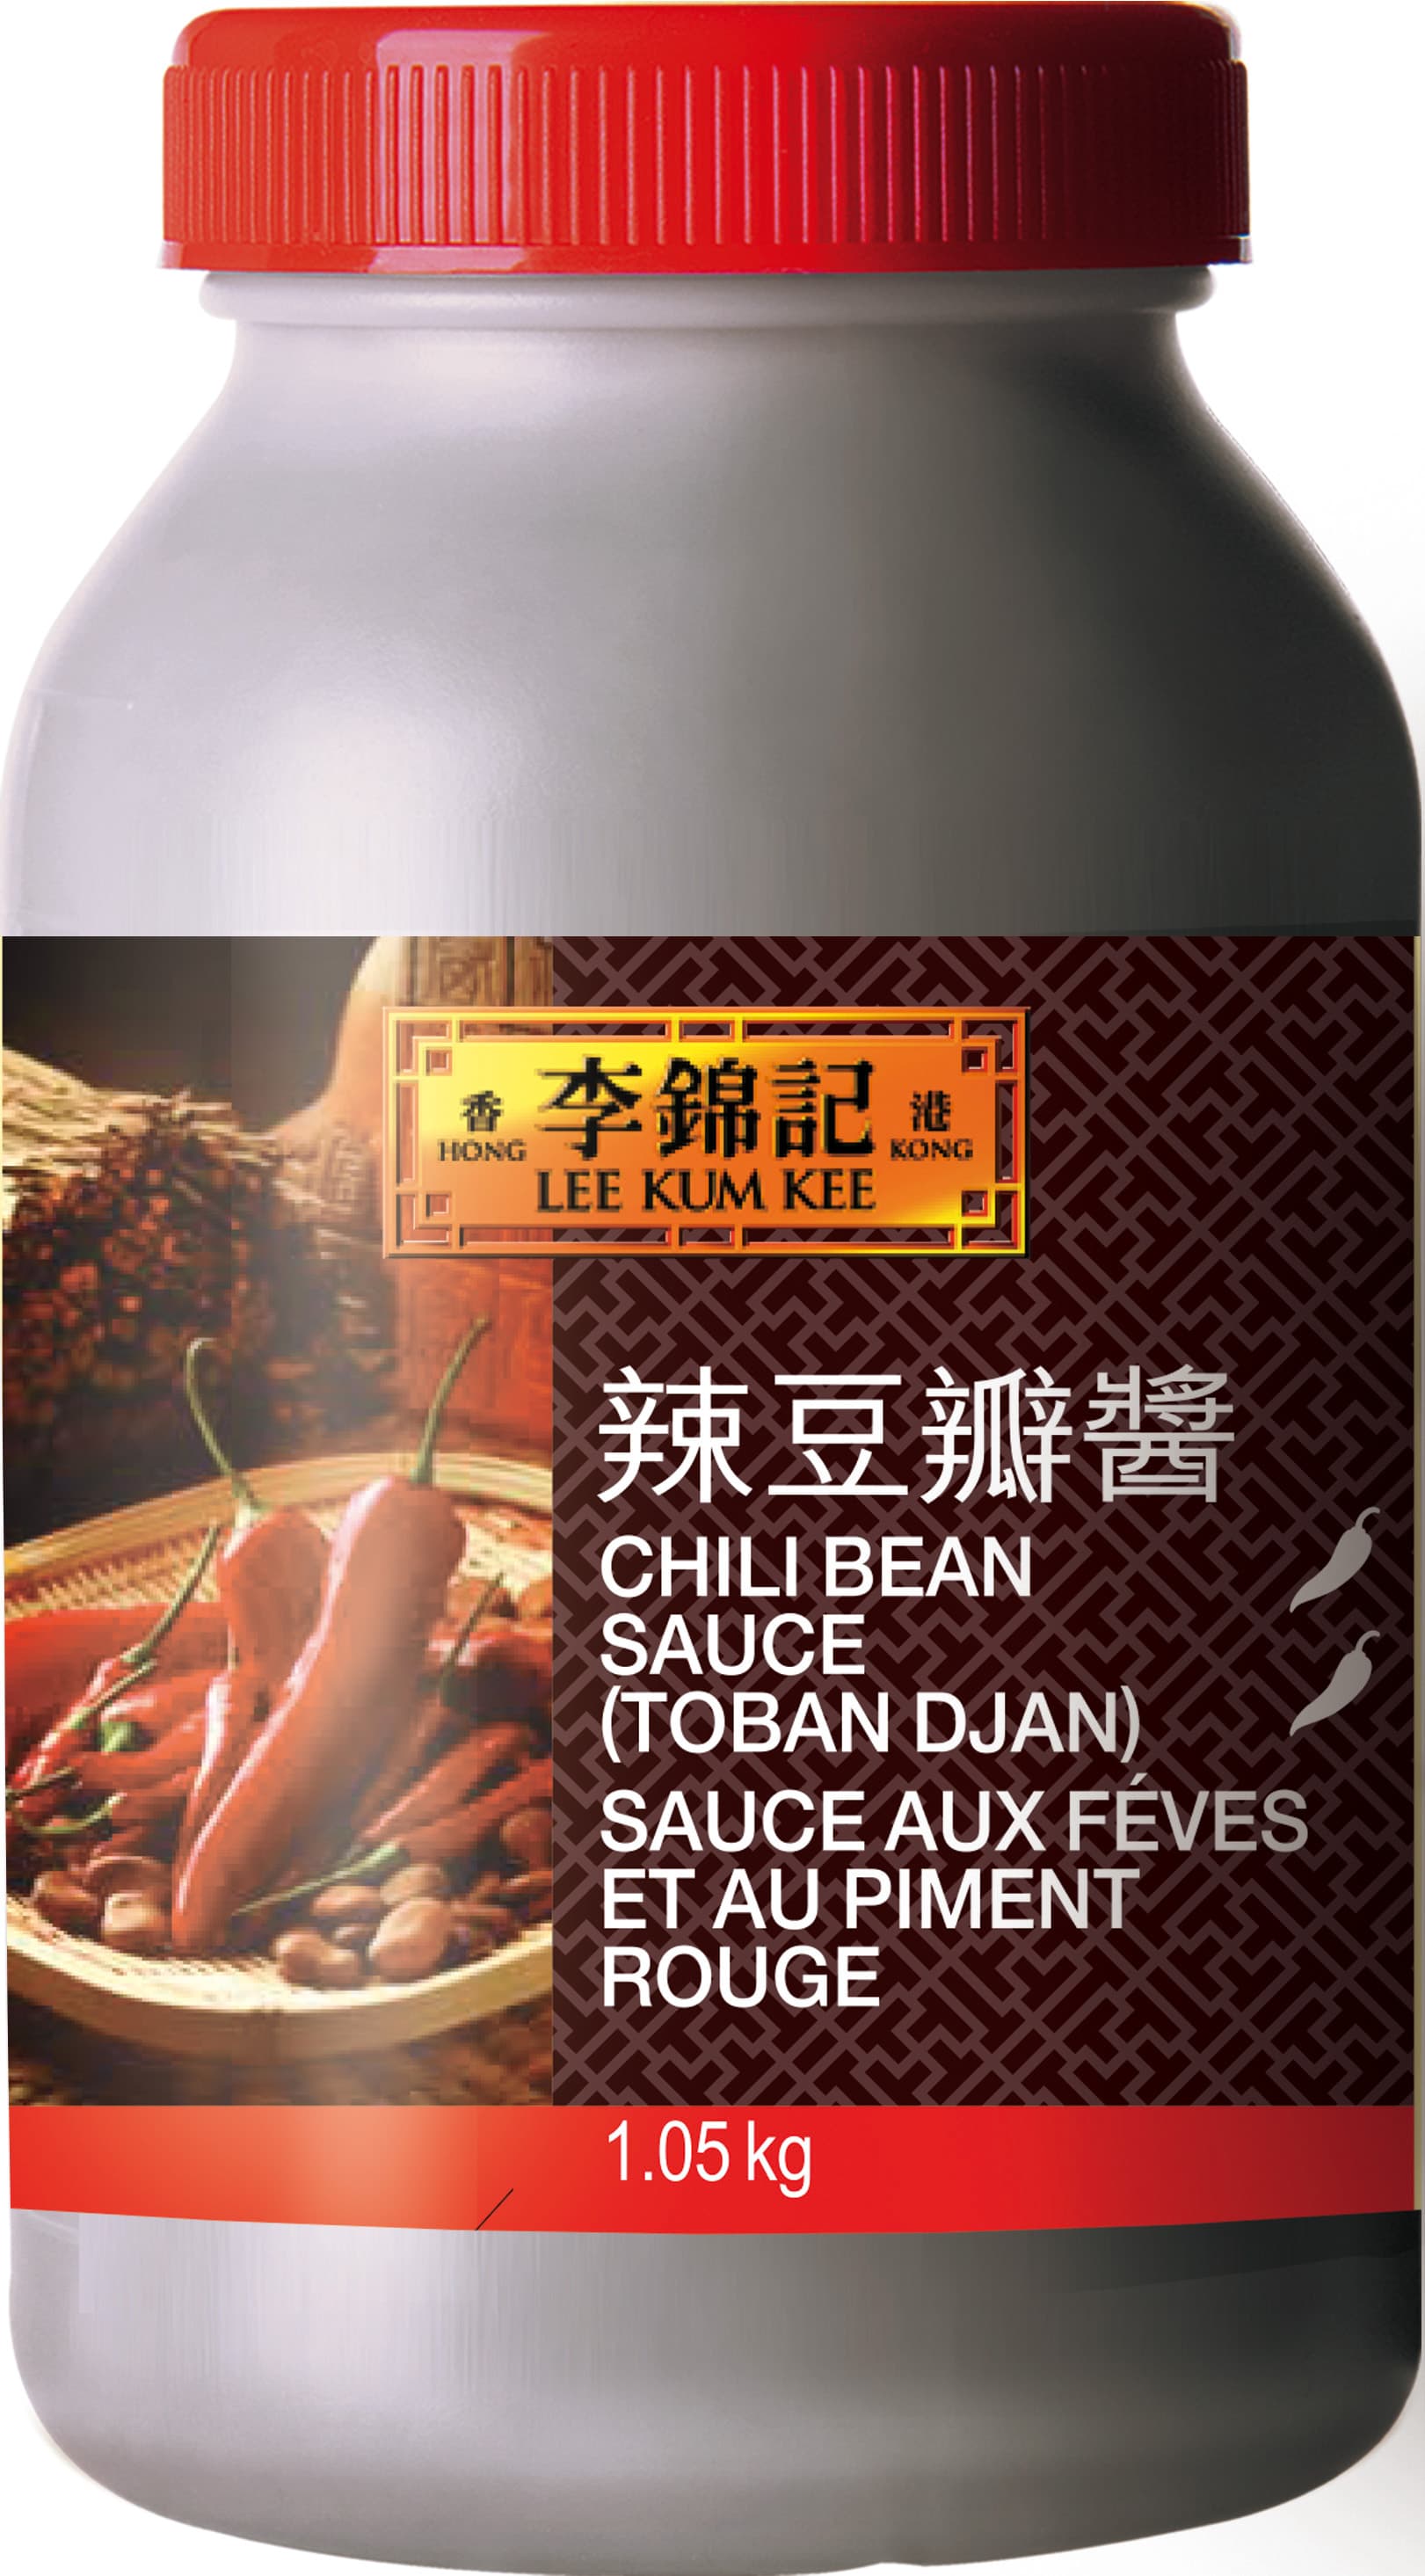 Chili Bean Sauce Toban Djan, 1.05 kg Jar